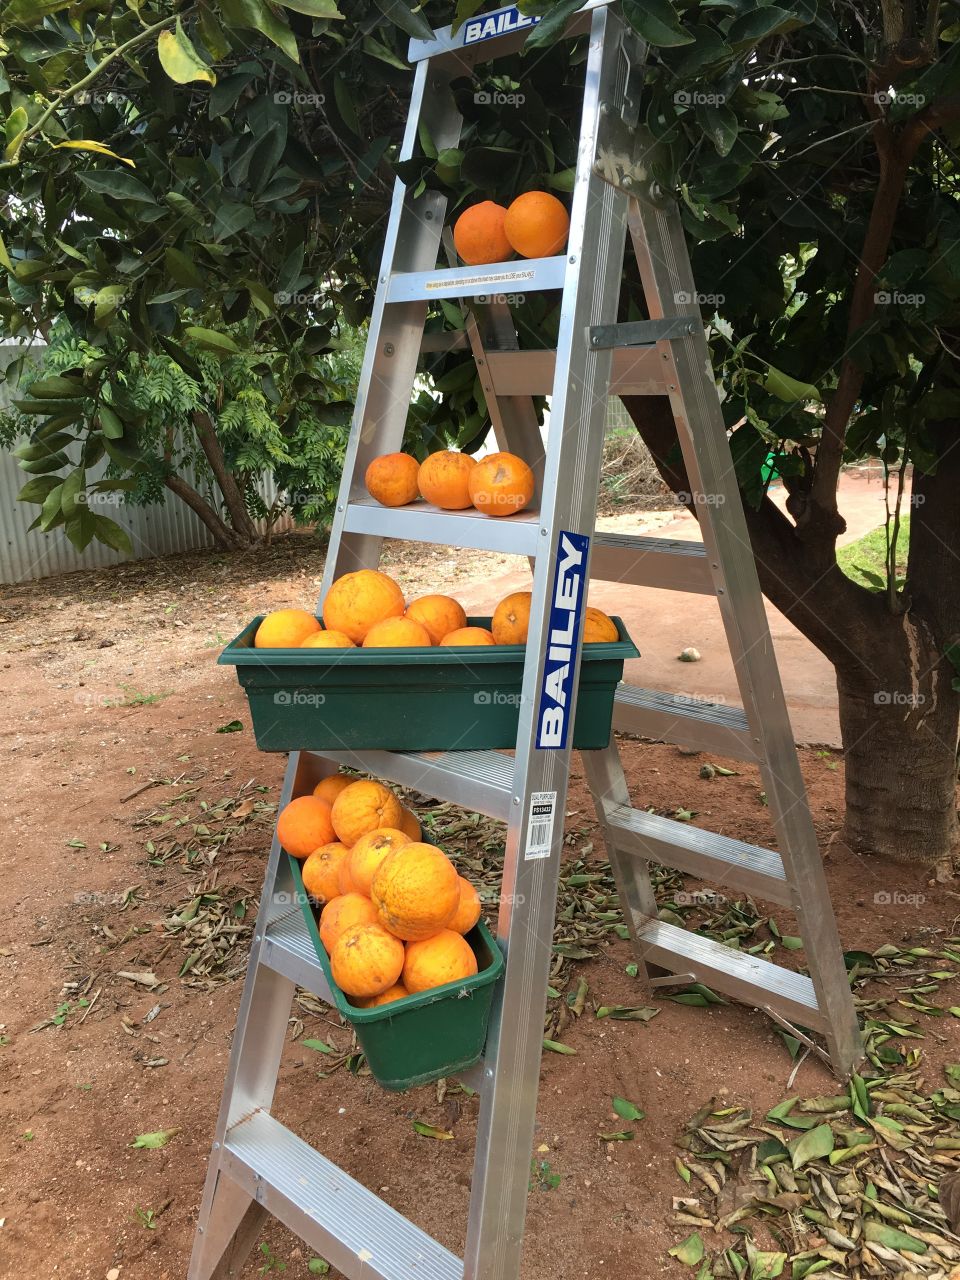 Picking oranges